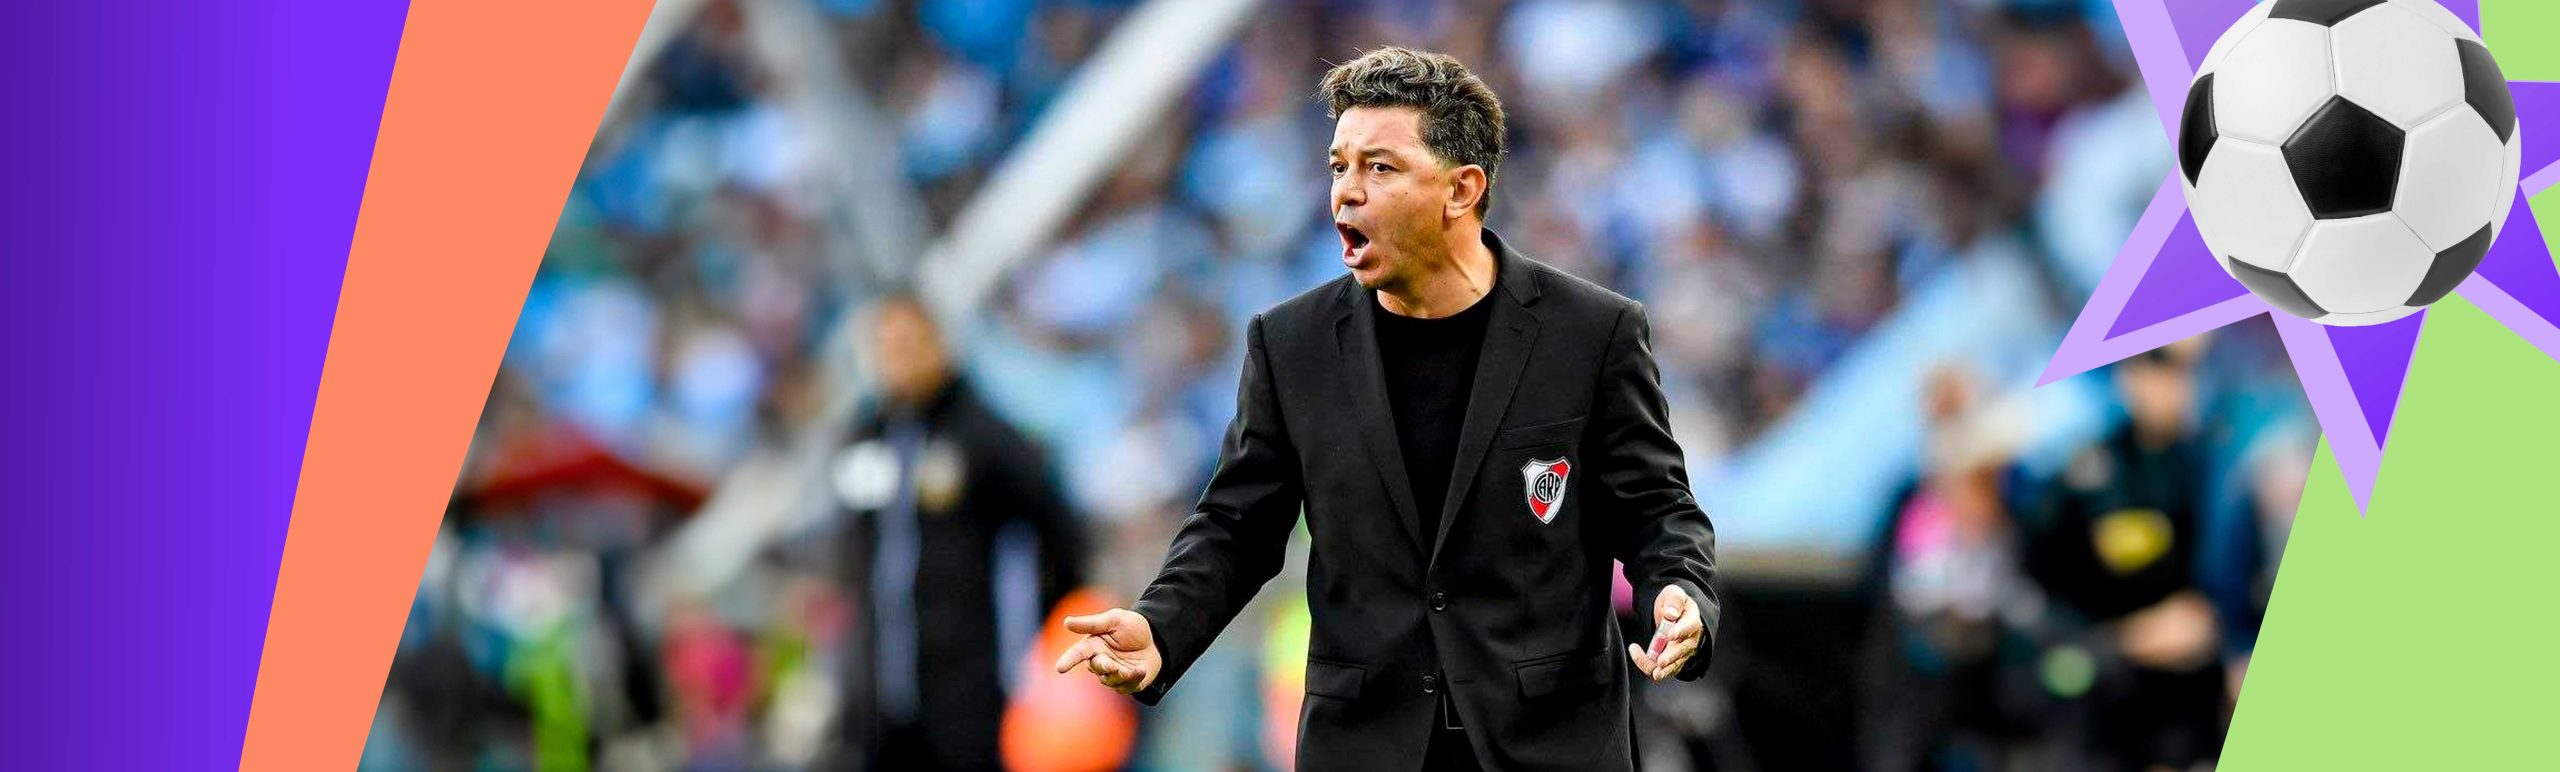 Libertadores Kubogining ikki karra g‘olibi «Al Ittihod»ni boshqaradi